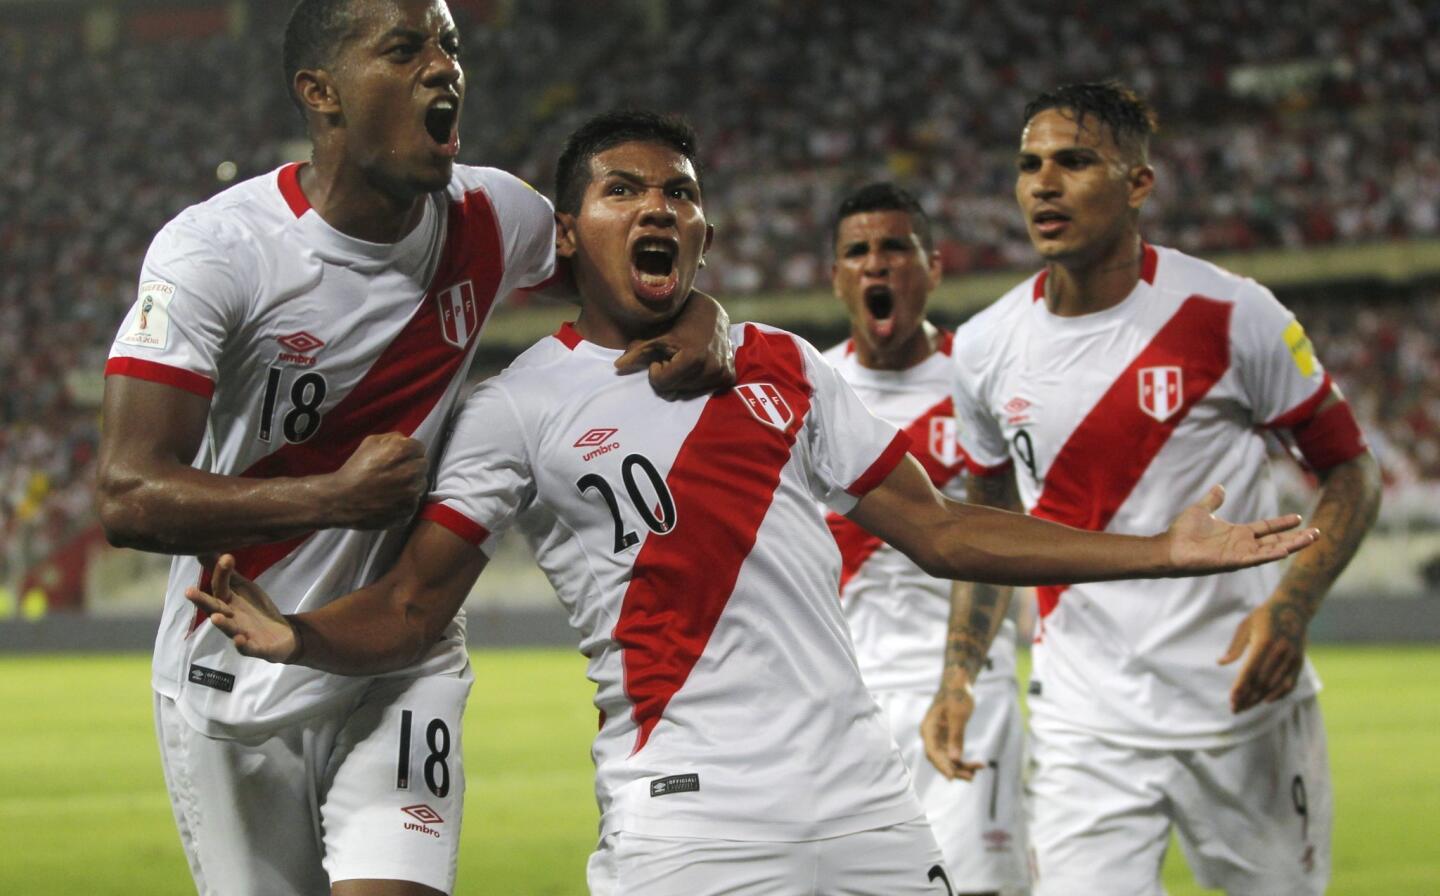 Edison Flores (centro), de la selección de Perú, festeja luego de anotar ante Uruguay en un partido de la eliminatoria sudamericana al Mundial, el martes 28 de marzo de 2017, en Lima (AP Foto/Martin Mejía) ** Usable by HOY, ELSENT and SD Only **